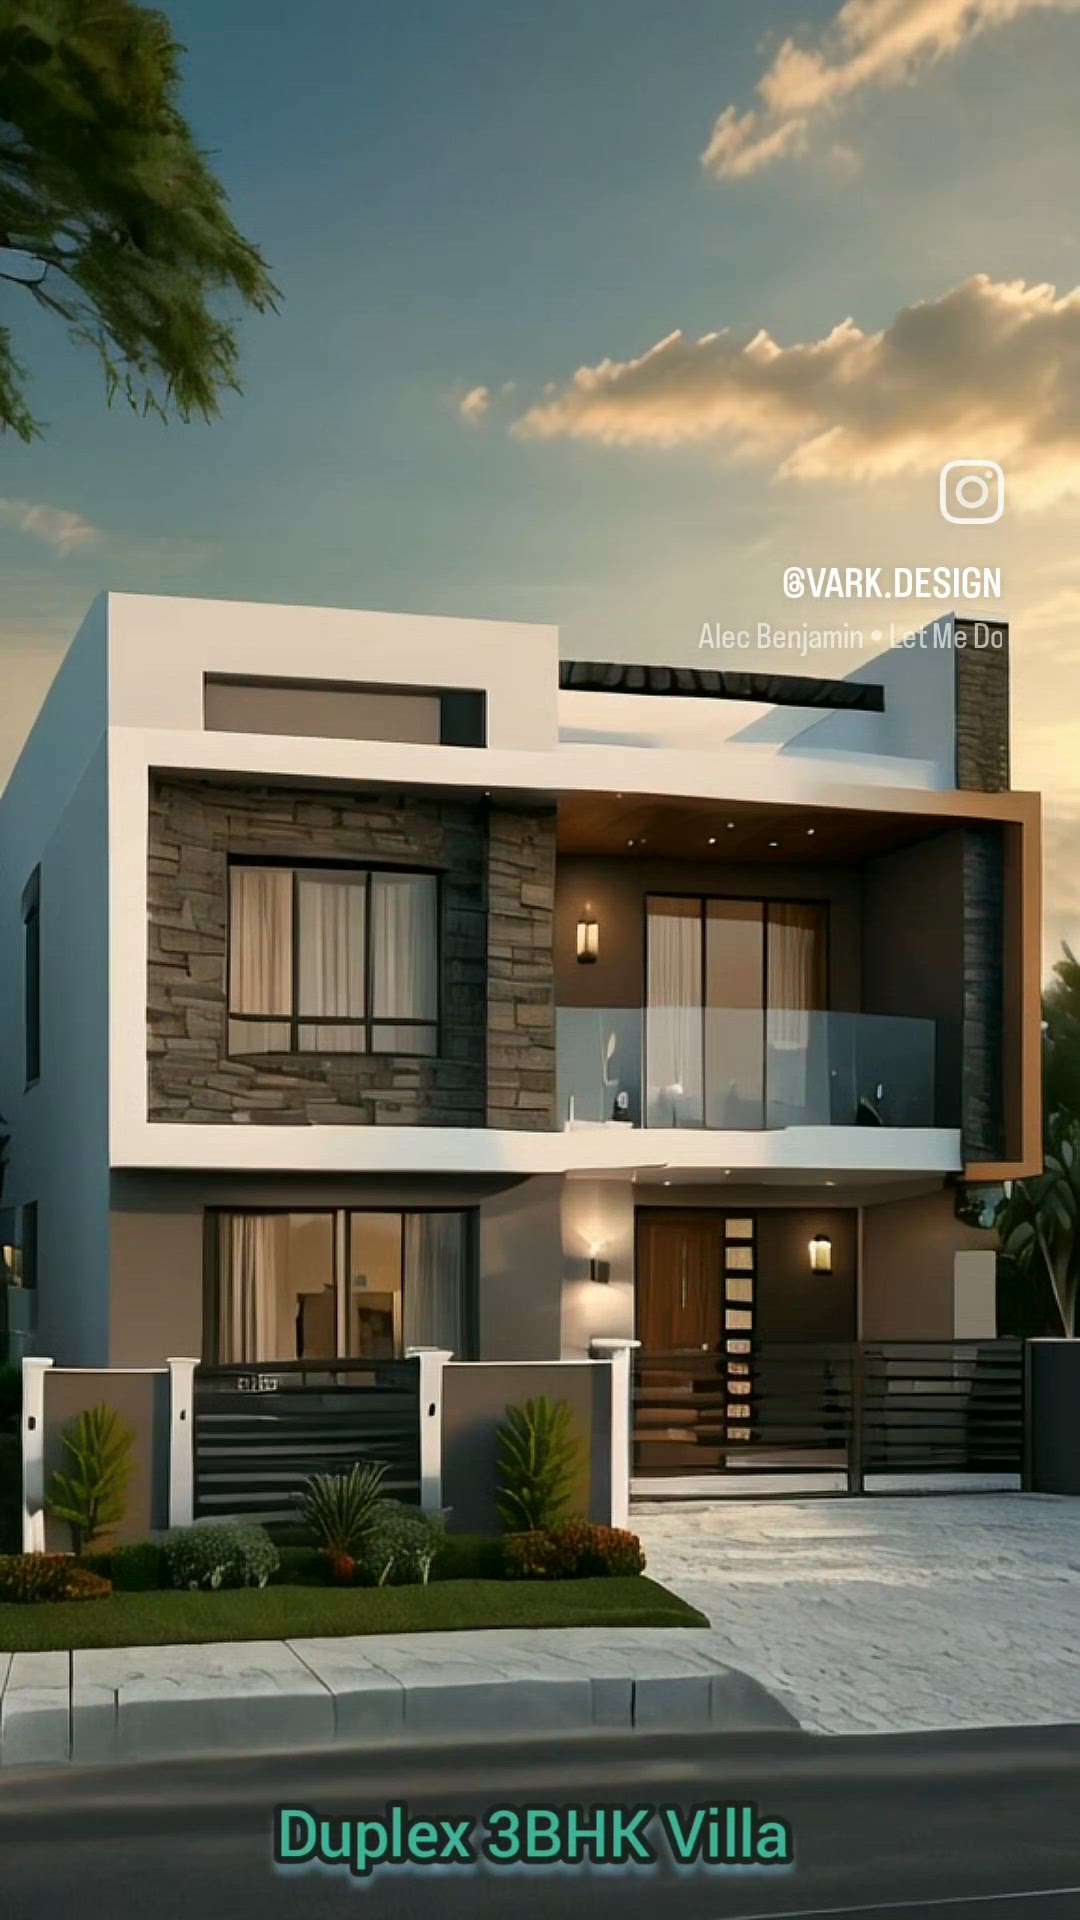 Duplex 3BHK laxury villa Plan Front Elevation design